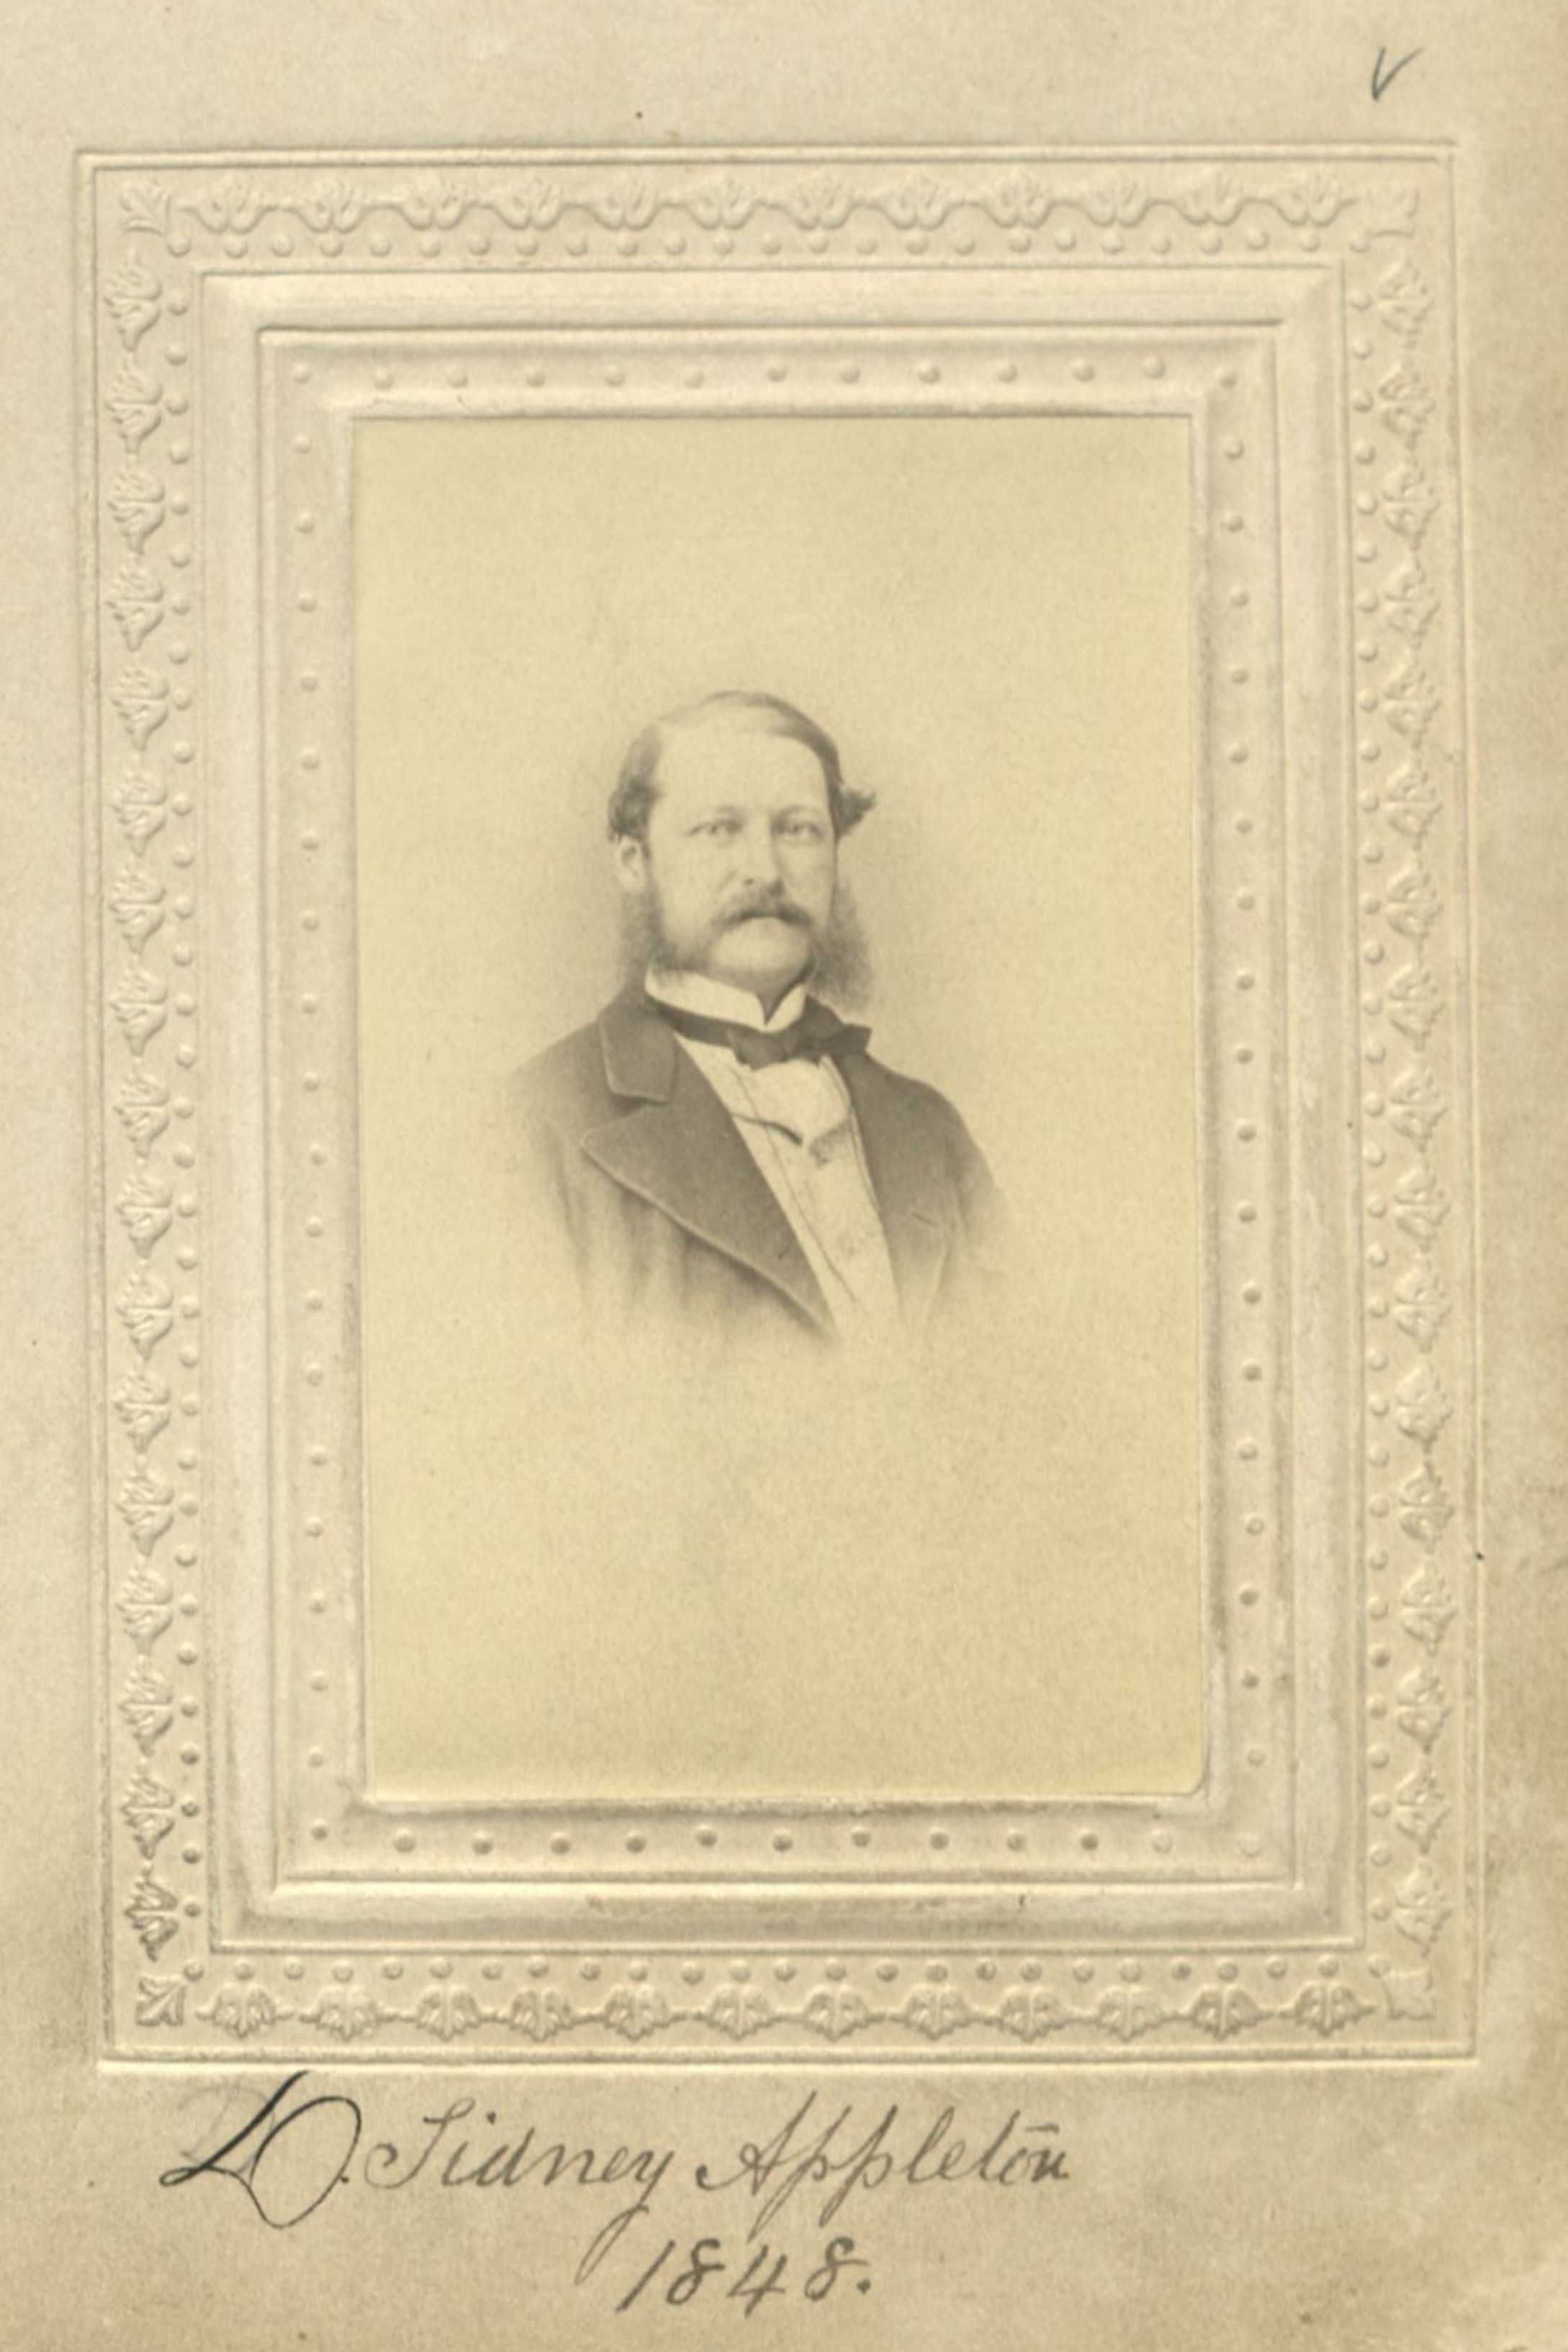 Member portrait of Daniel S. Appleton